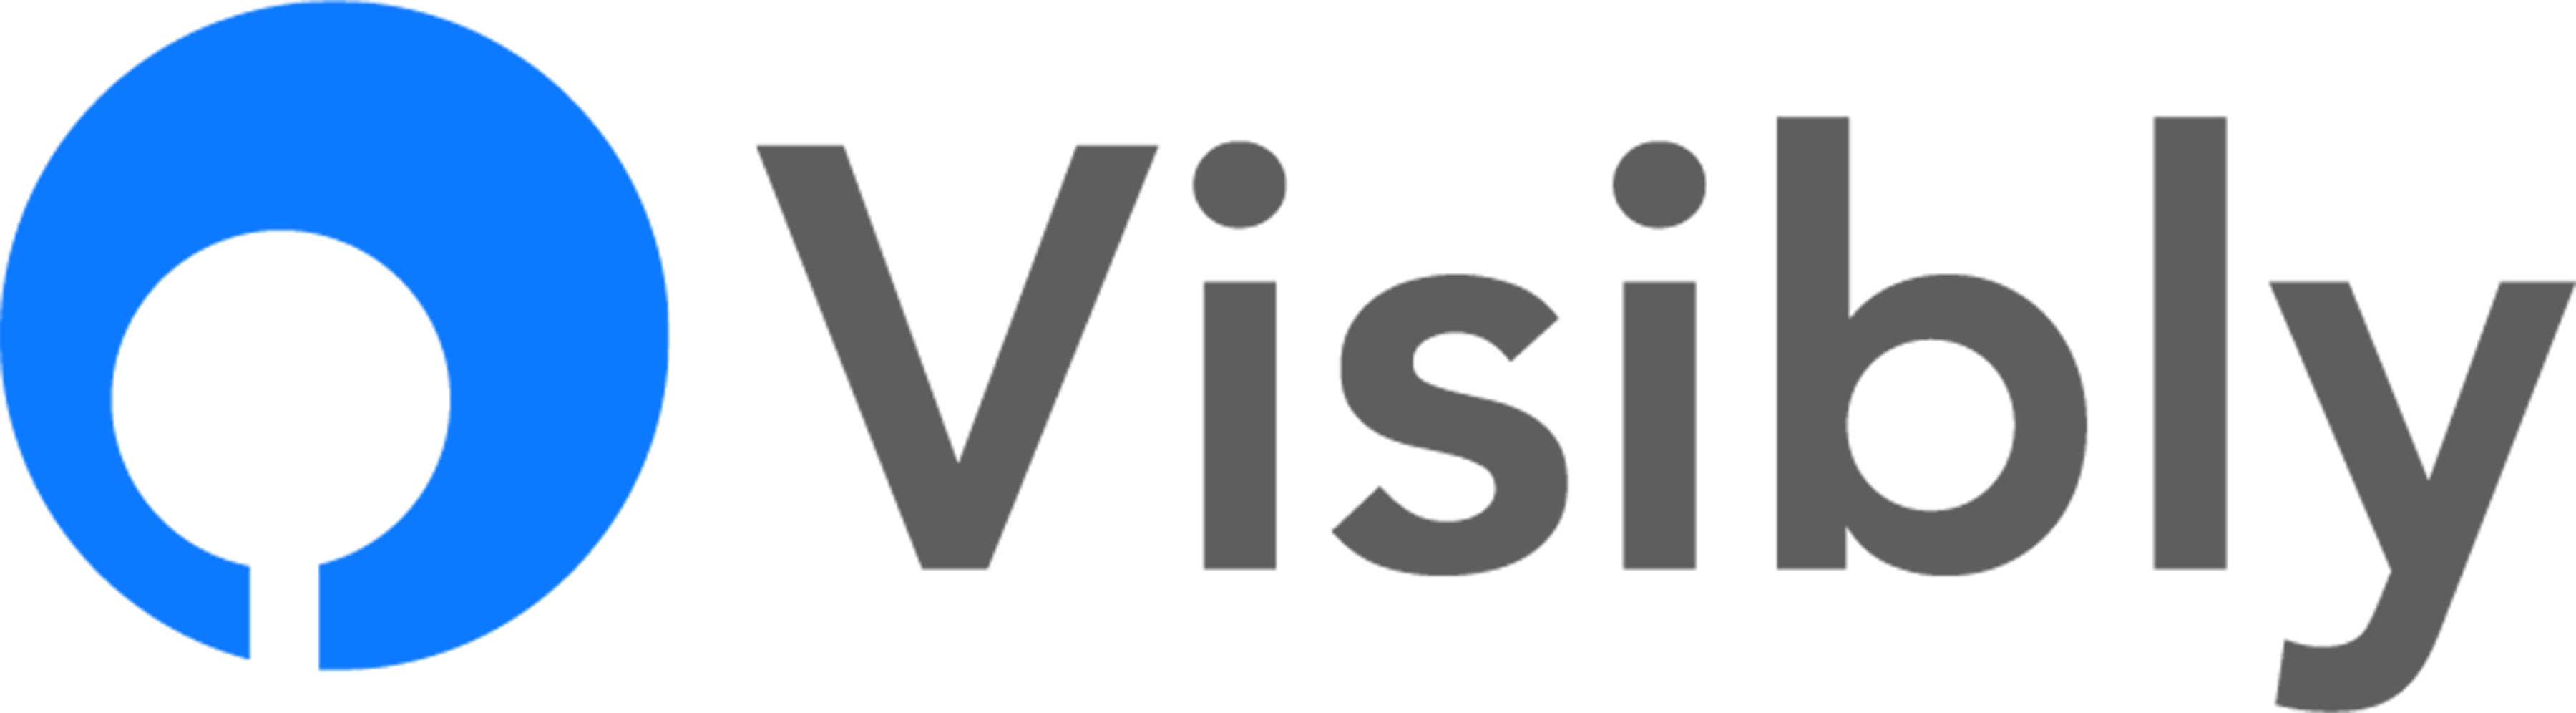 Visibly Logo